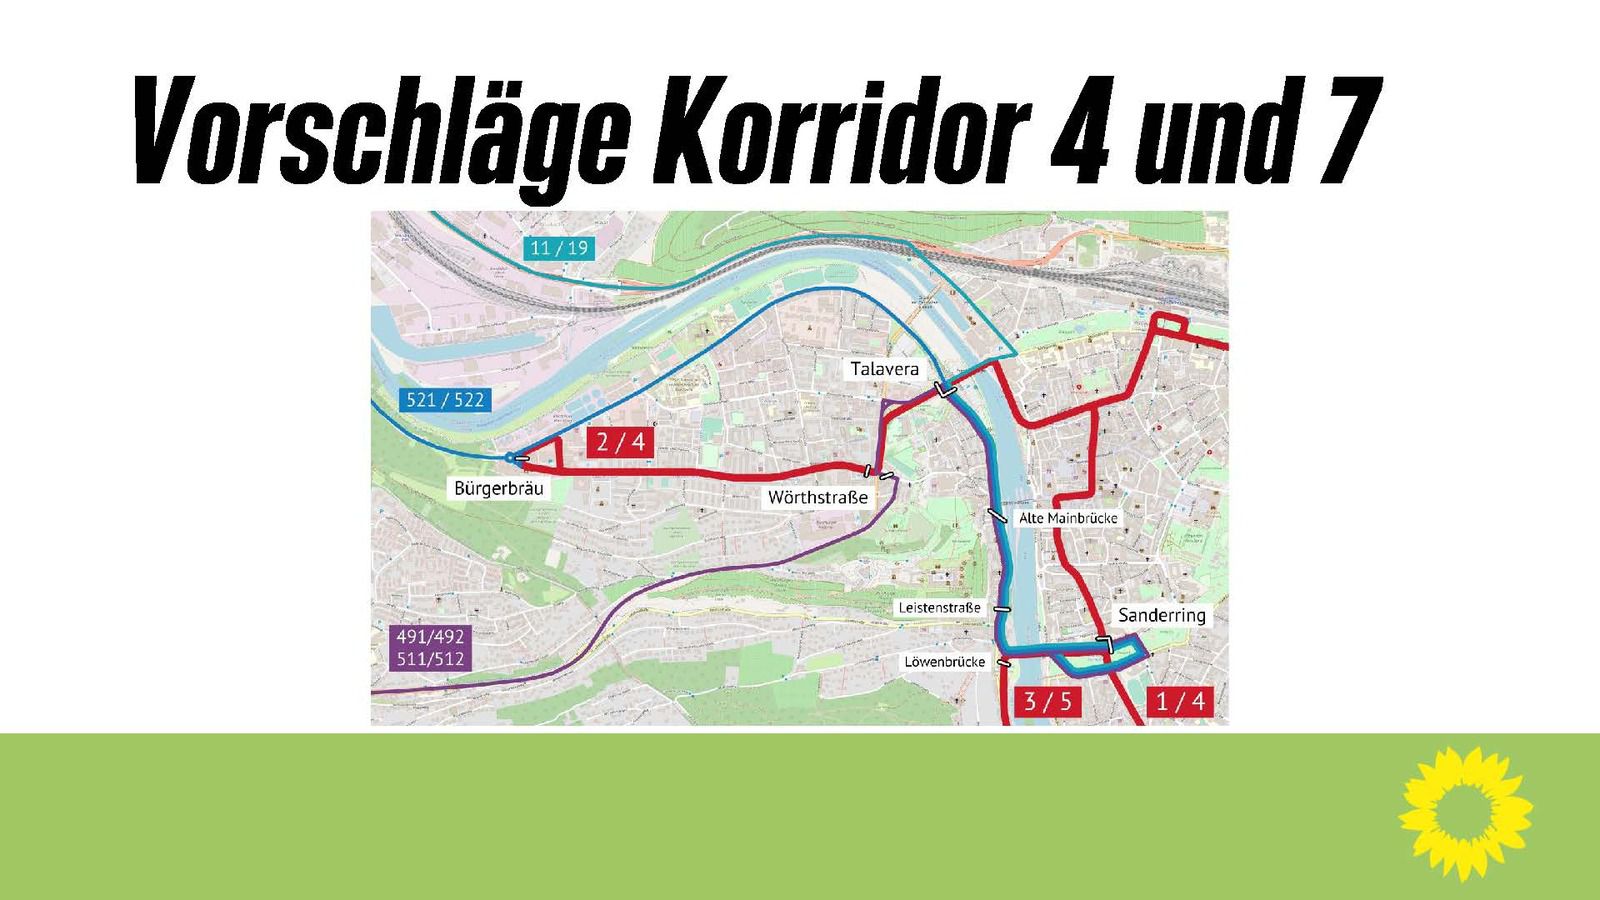 Nahverkehrs-Konzept für bessere Verkehrsverbindungen in Veitshöchheim - Pressemitteilung des Grünen-Ortsverbandes zur Neuausschreibung des Korridors 6